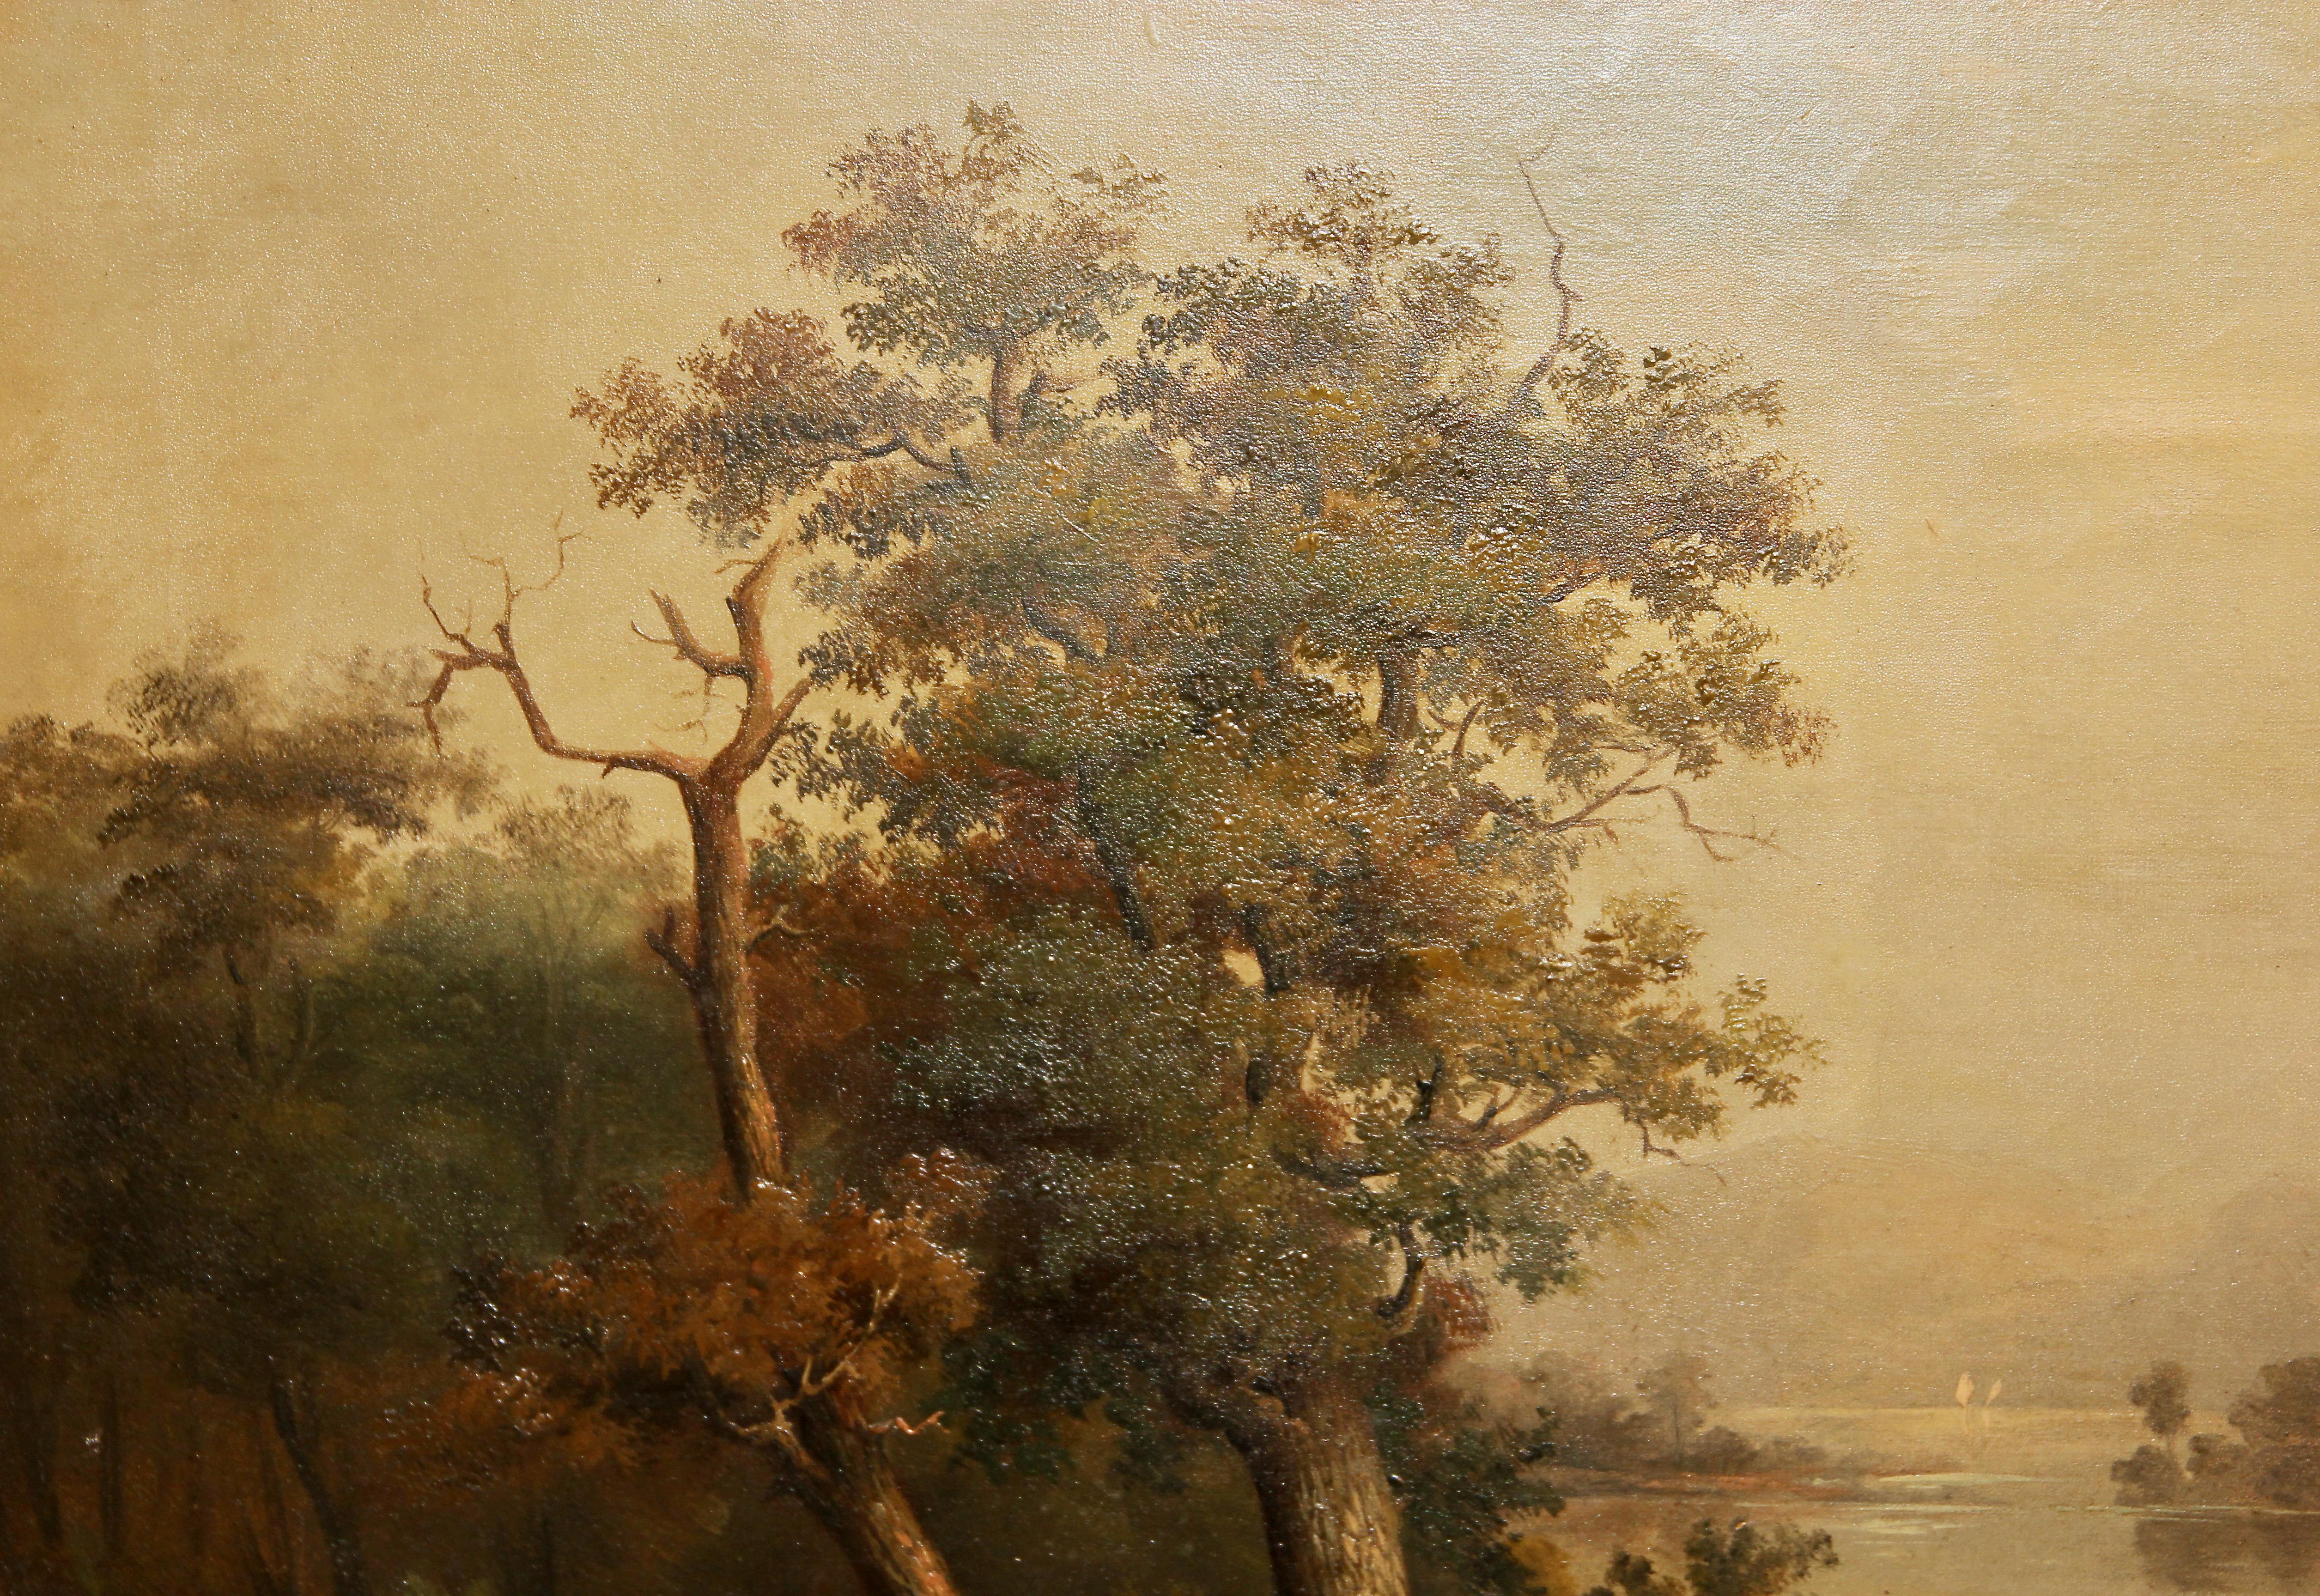 Vue d'un paysage romantique, huile sur toile. 19ème siècle.

Dimensions incluant le cadre 76.5cm x 100cm
Dimensions sans cadre 55.5cm x 79cm.